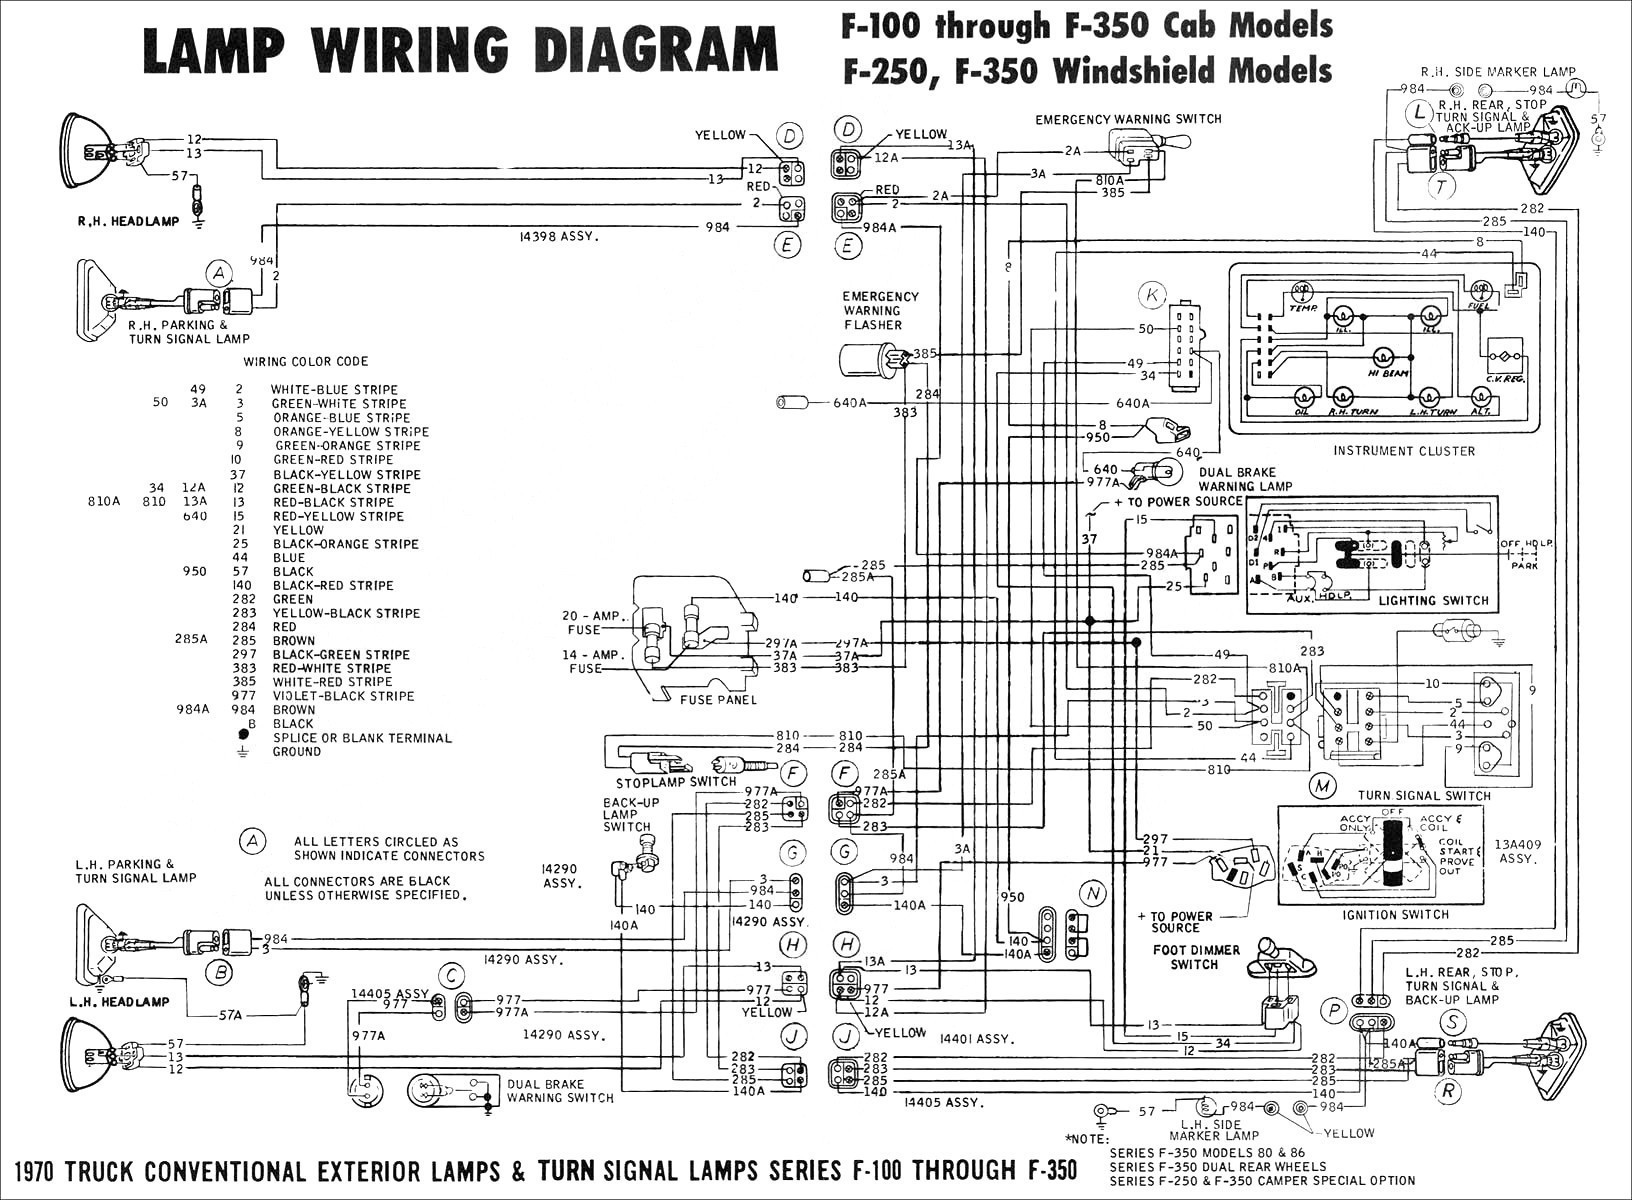 Car Amp Installation Diagram Wire Schematic Pg Amp E Symbols Of Car Amp Installation Diagram